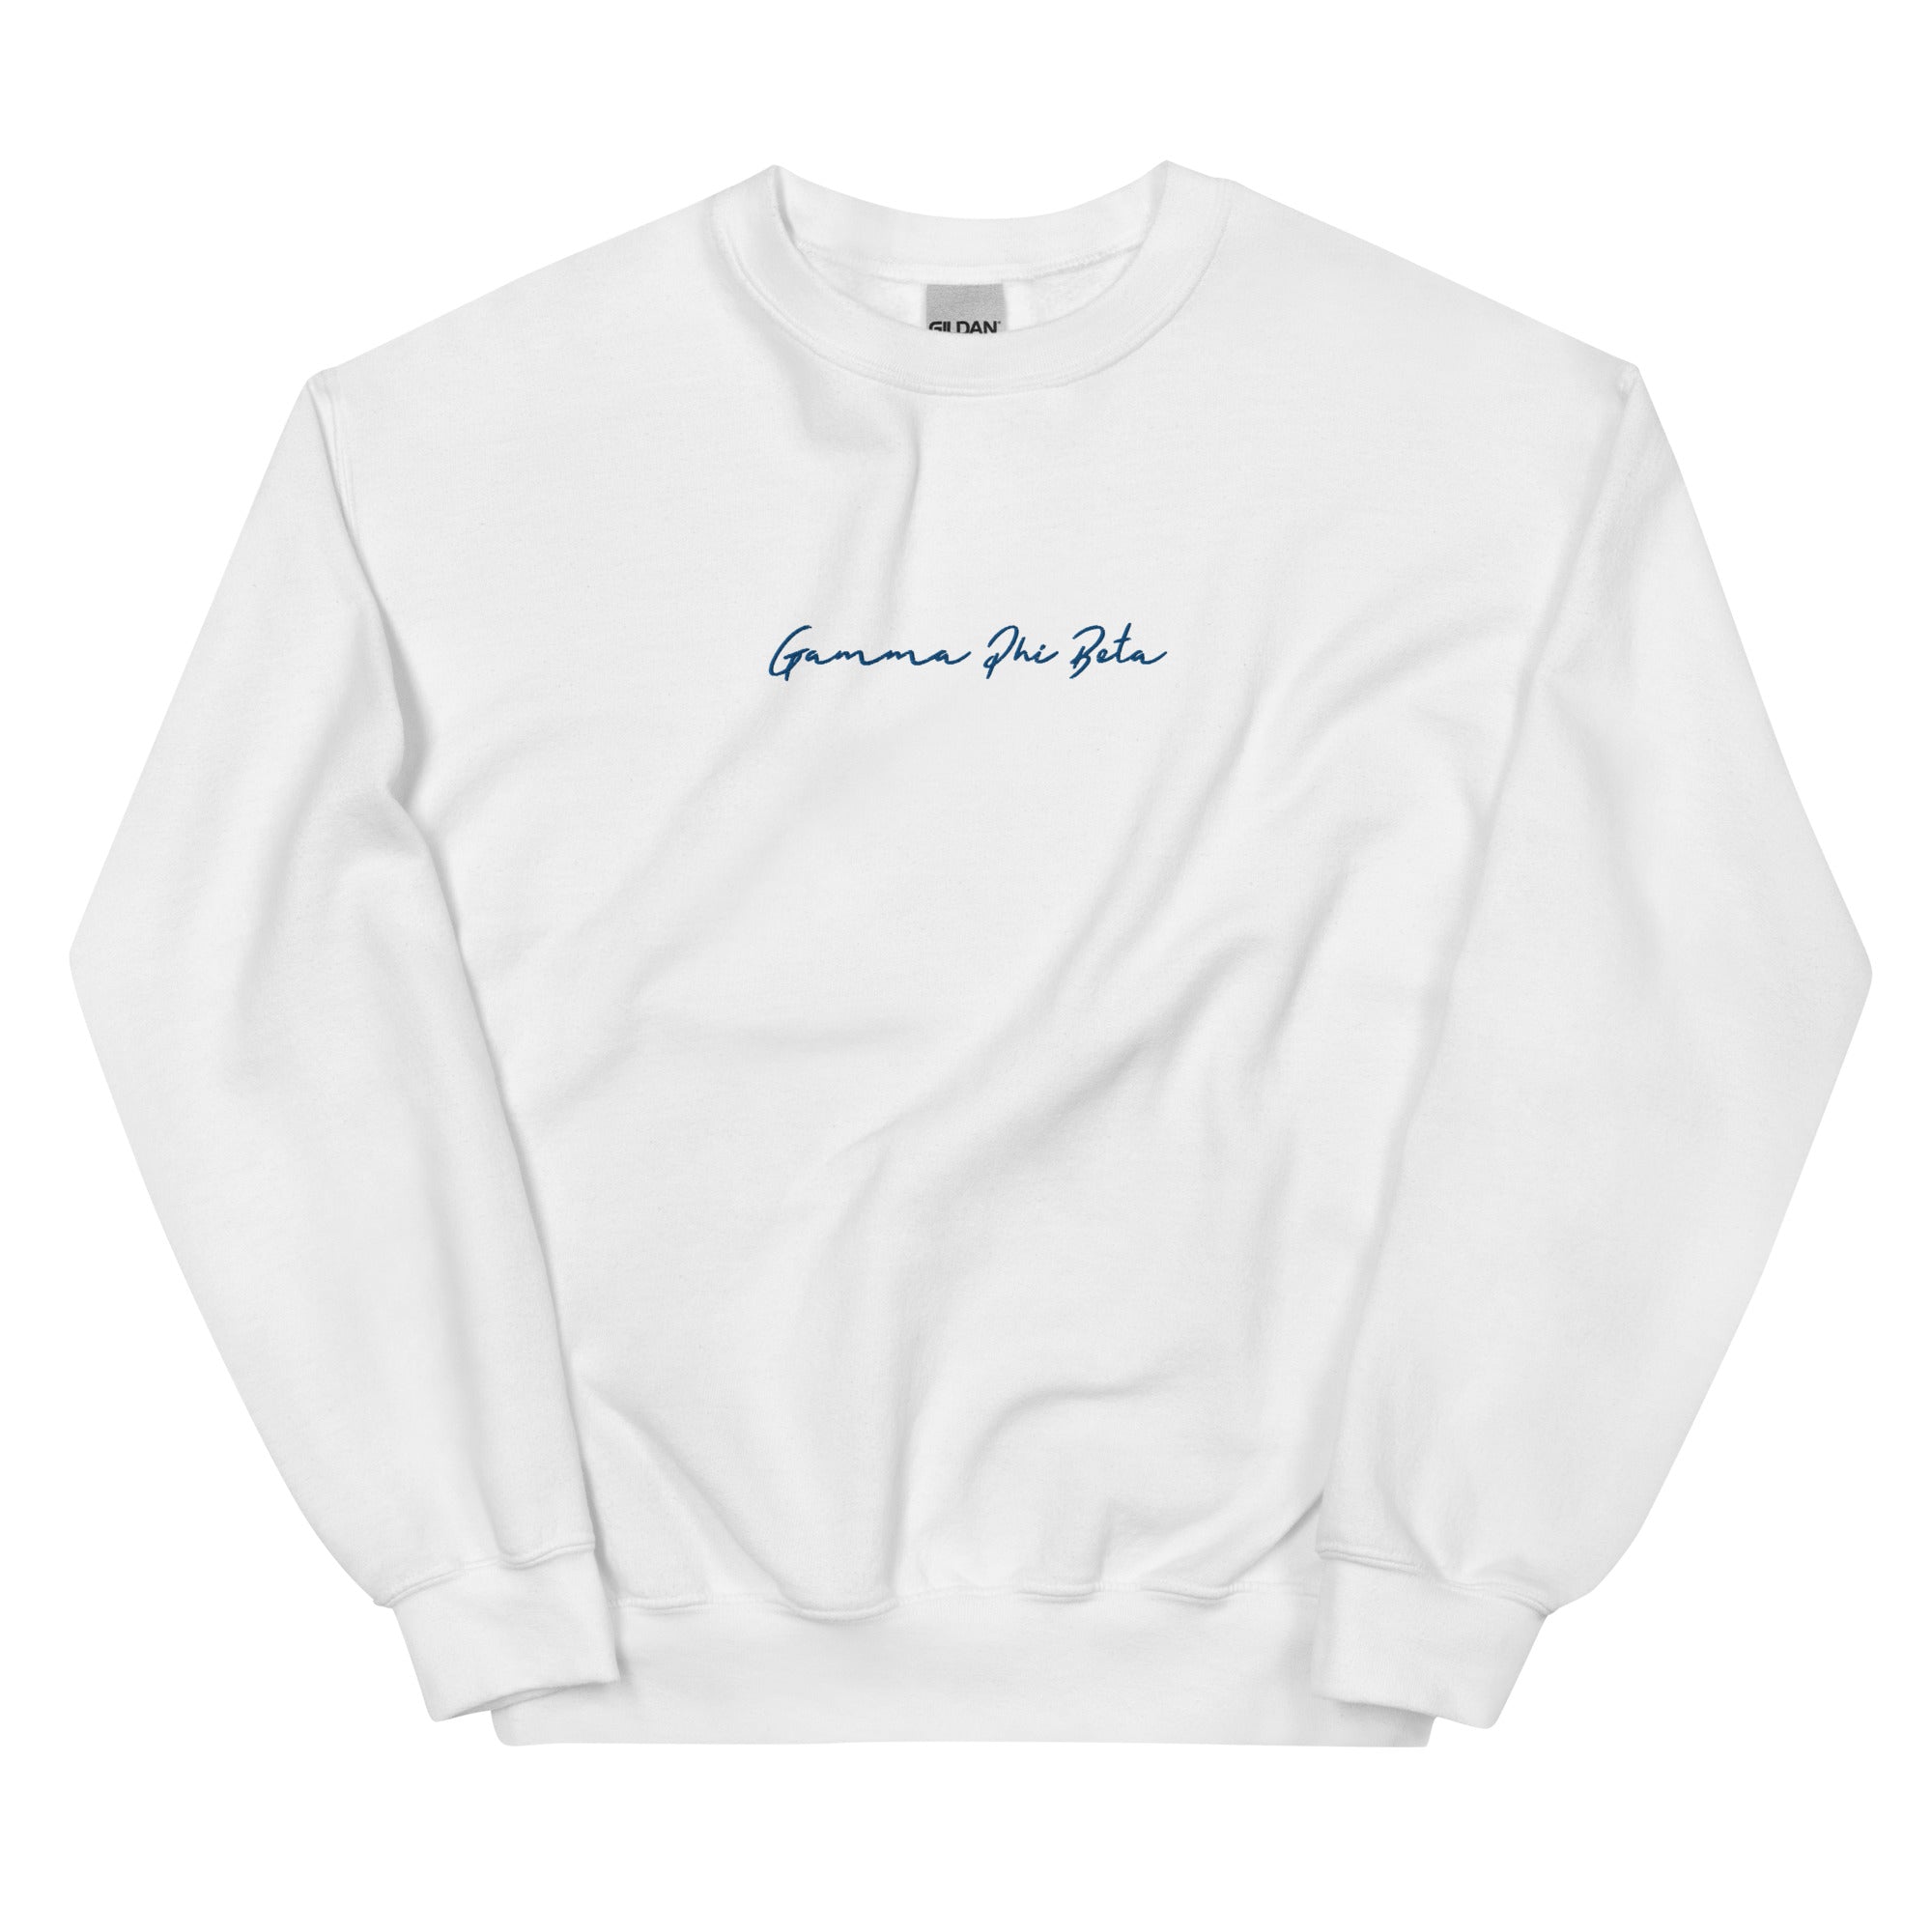 Cursive Sweatshirt (Sororities G-Z)